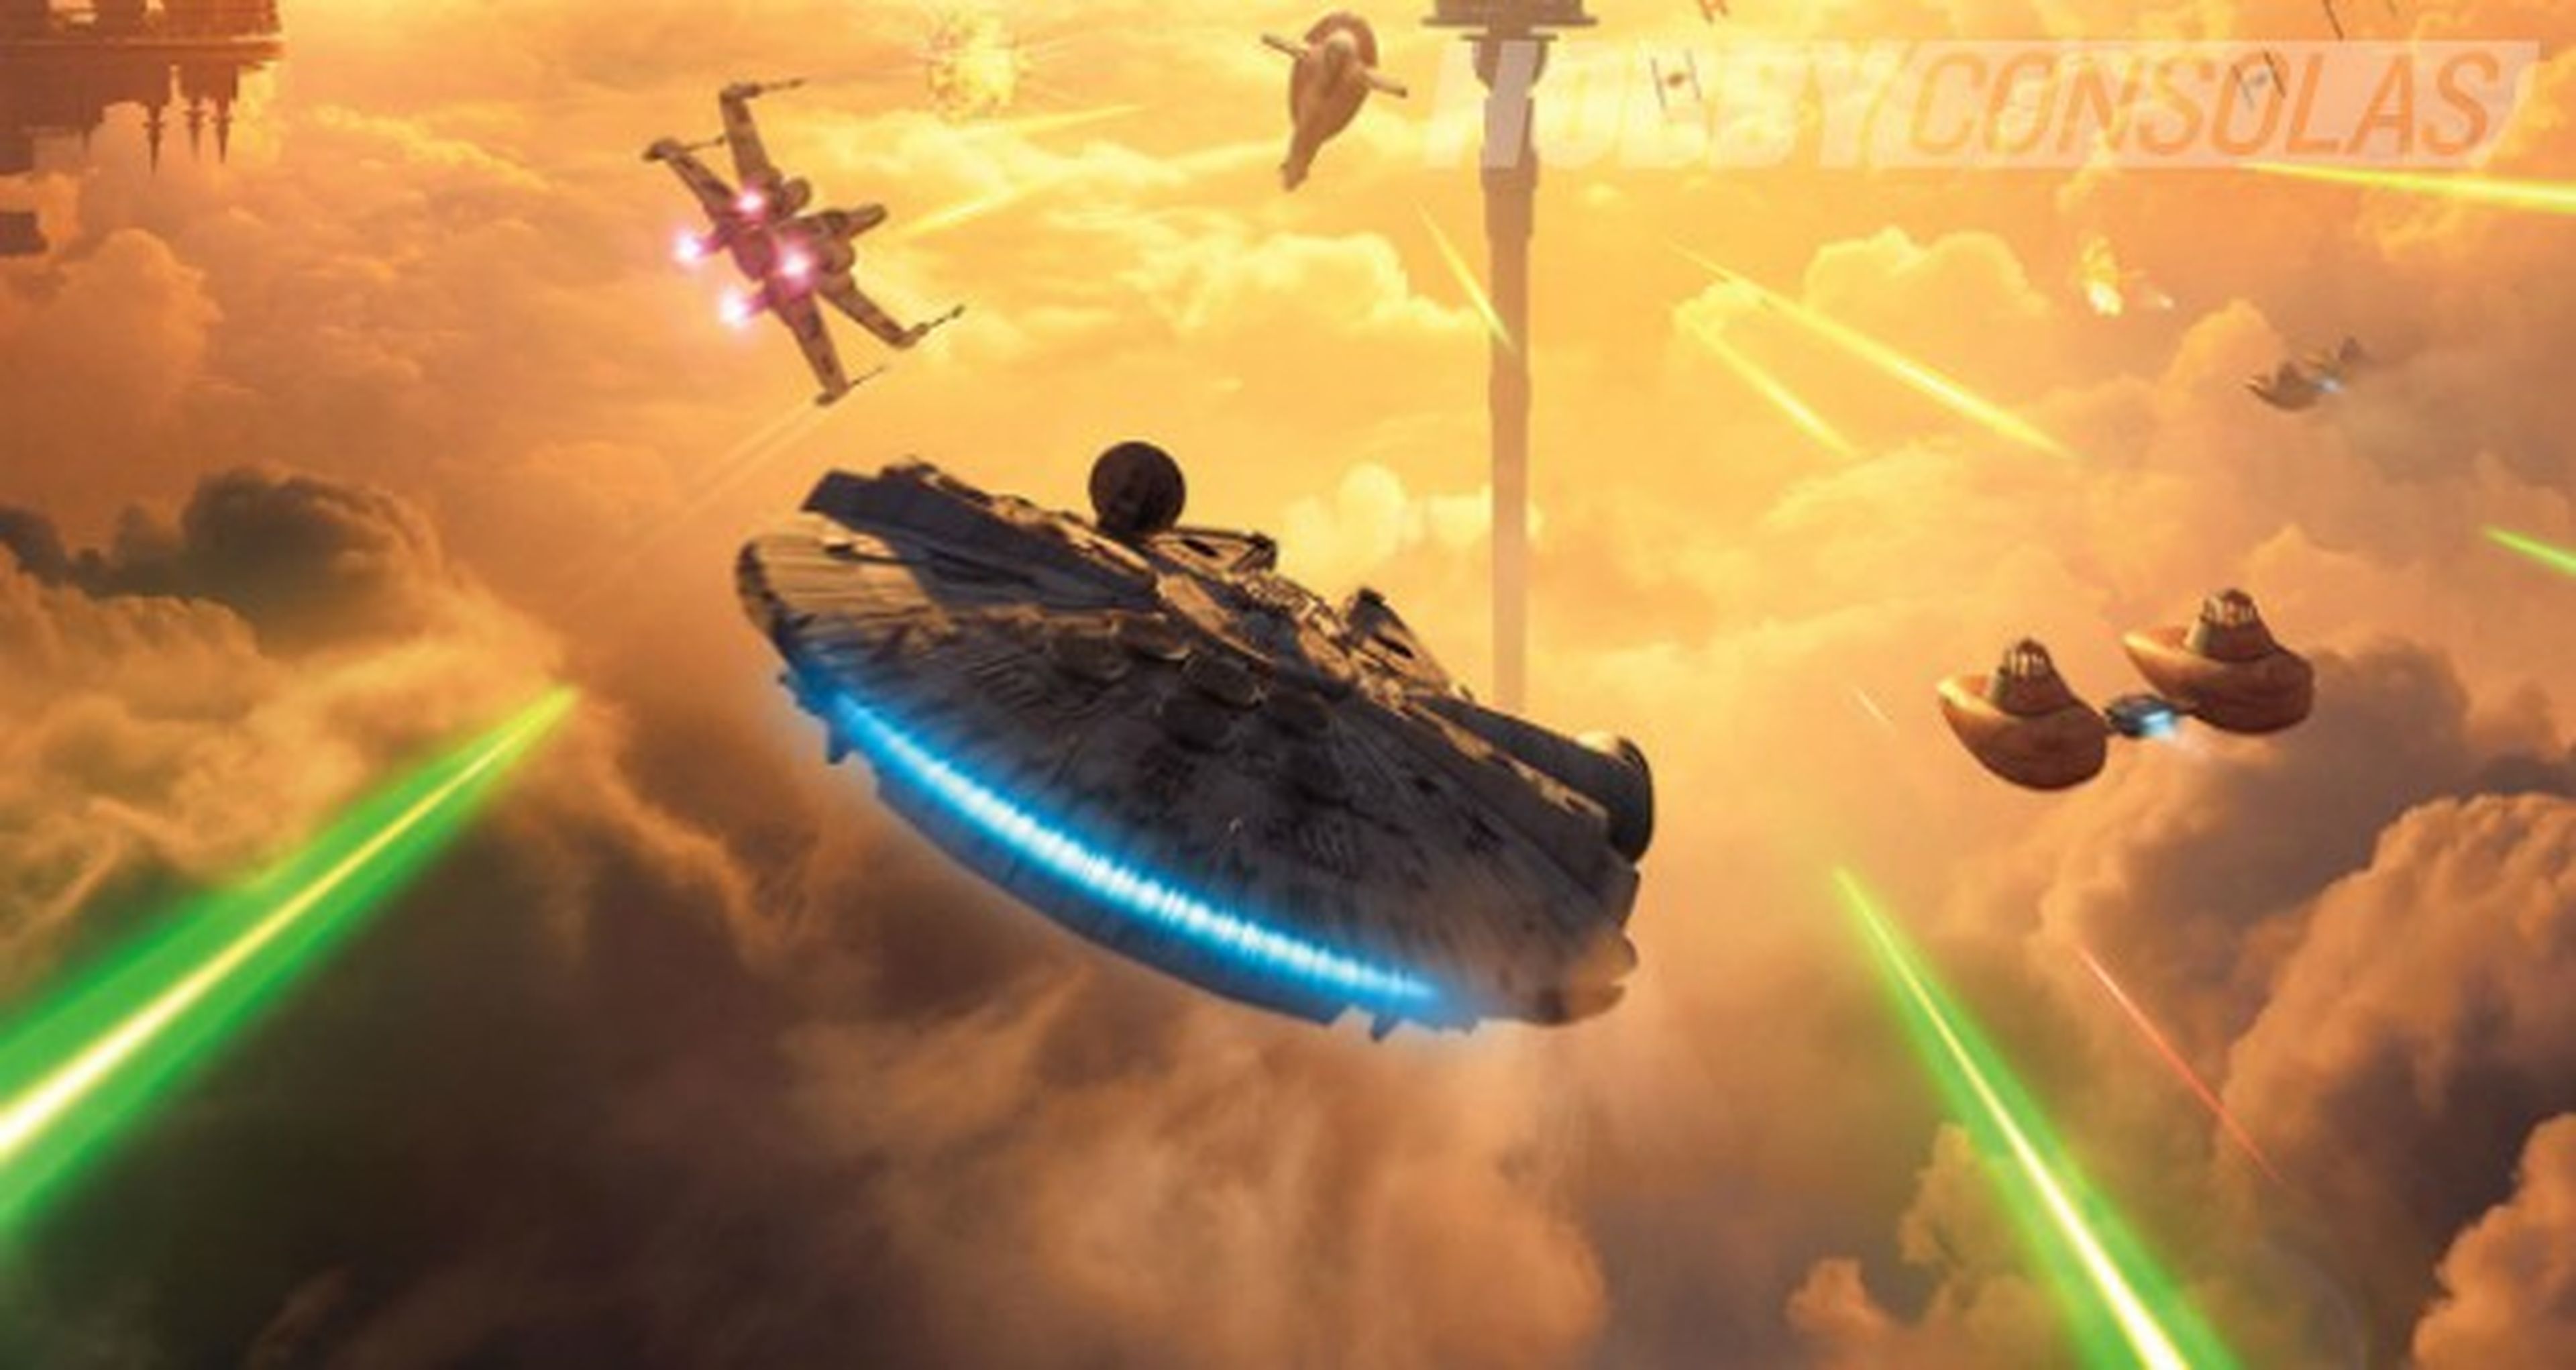 Star Wars Battlefront: Bespin - Imágenes y fecha de lanzamiento